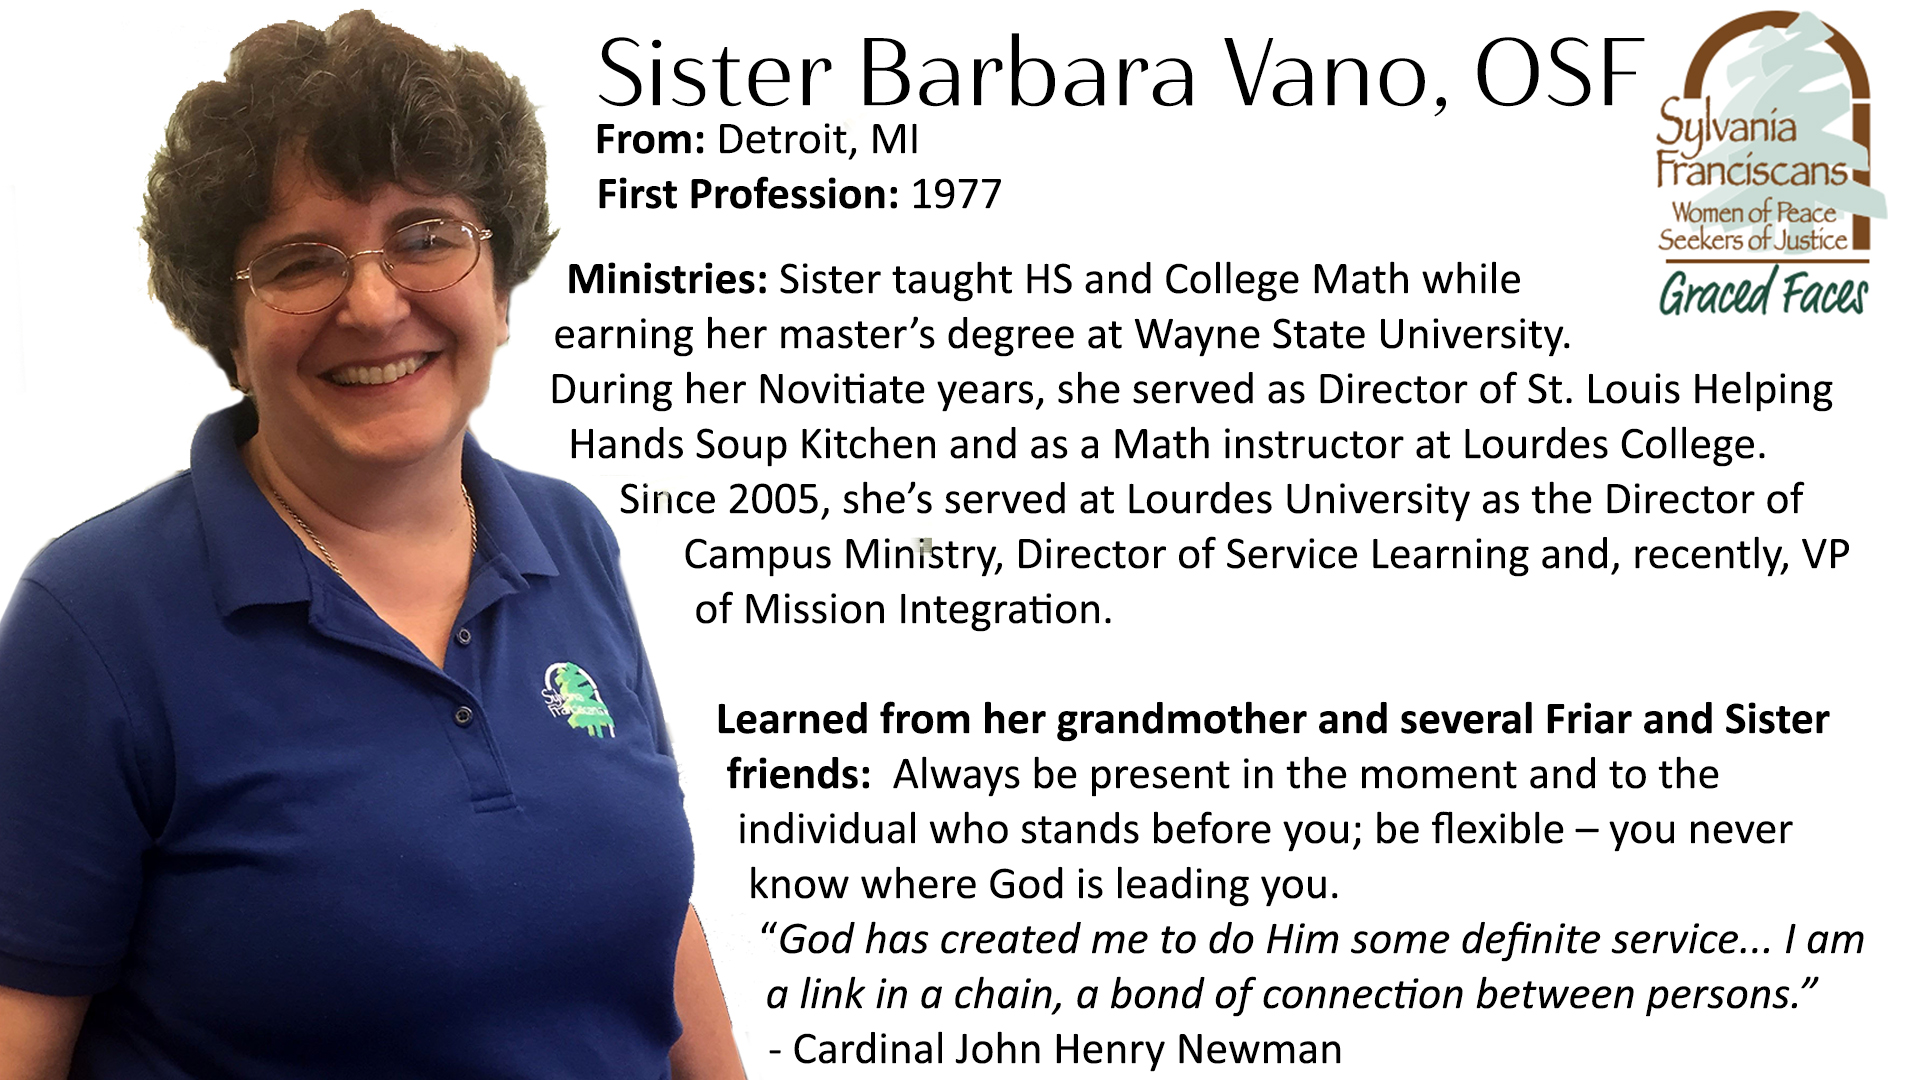 Sister Barbara Vano Graced Faces OSF